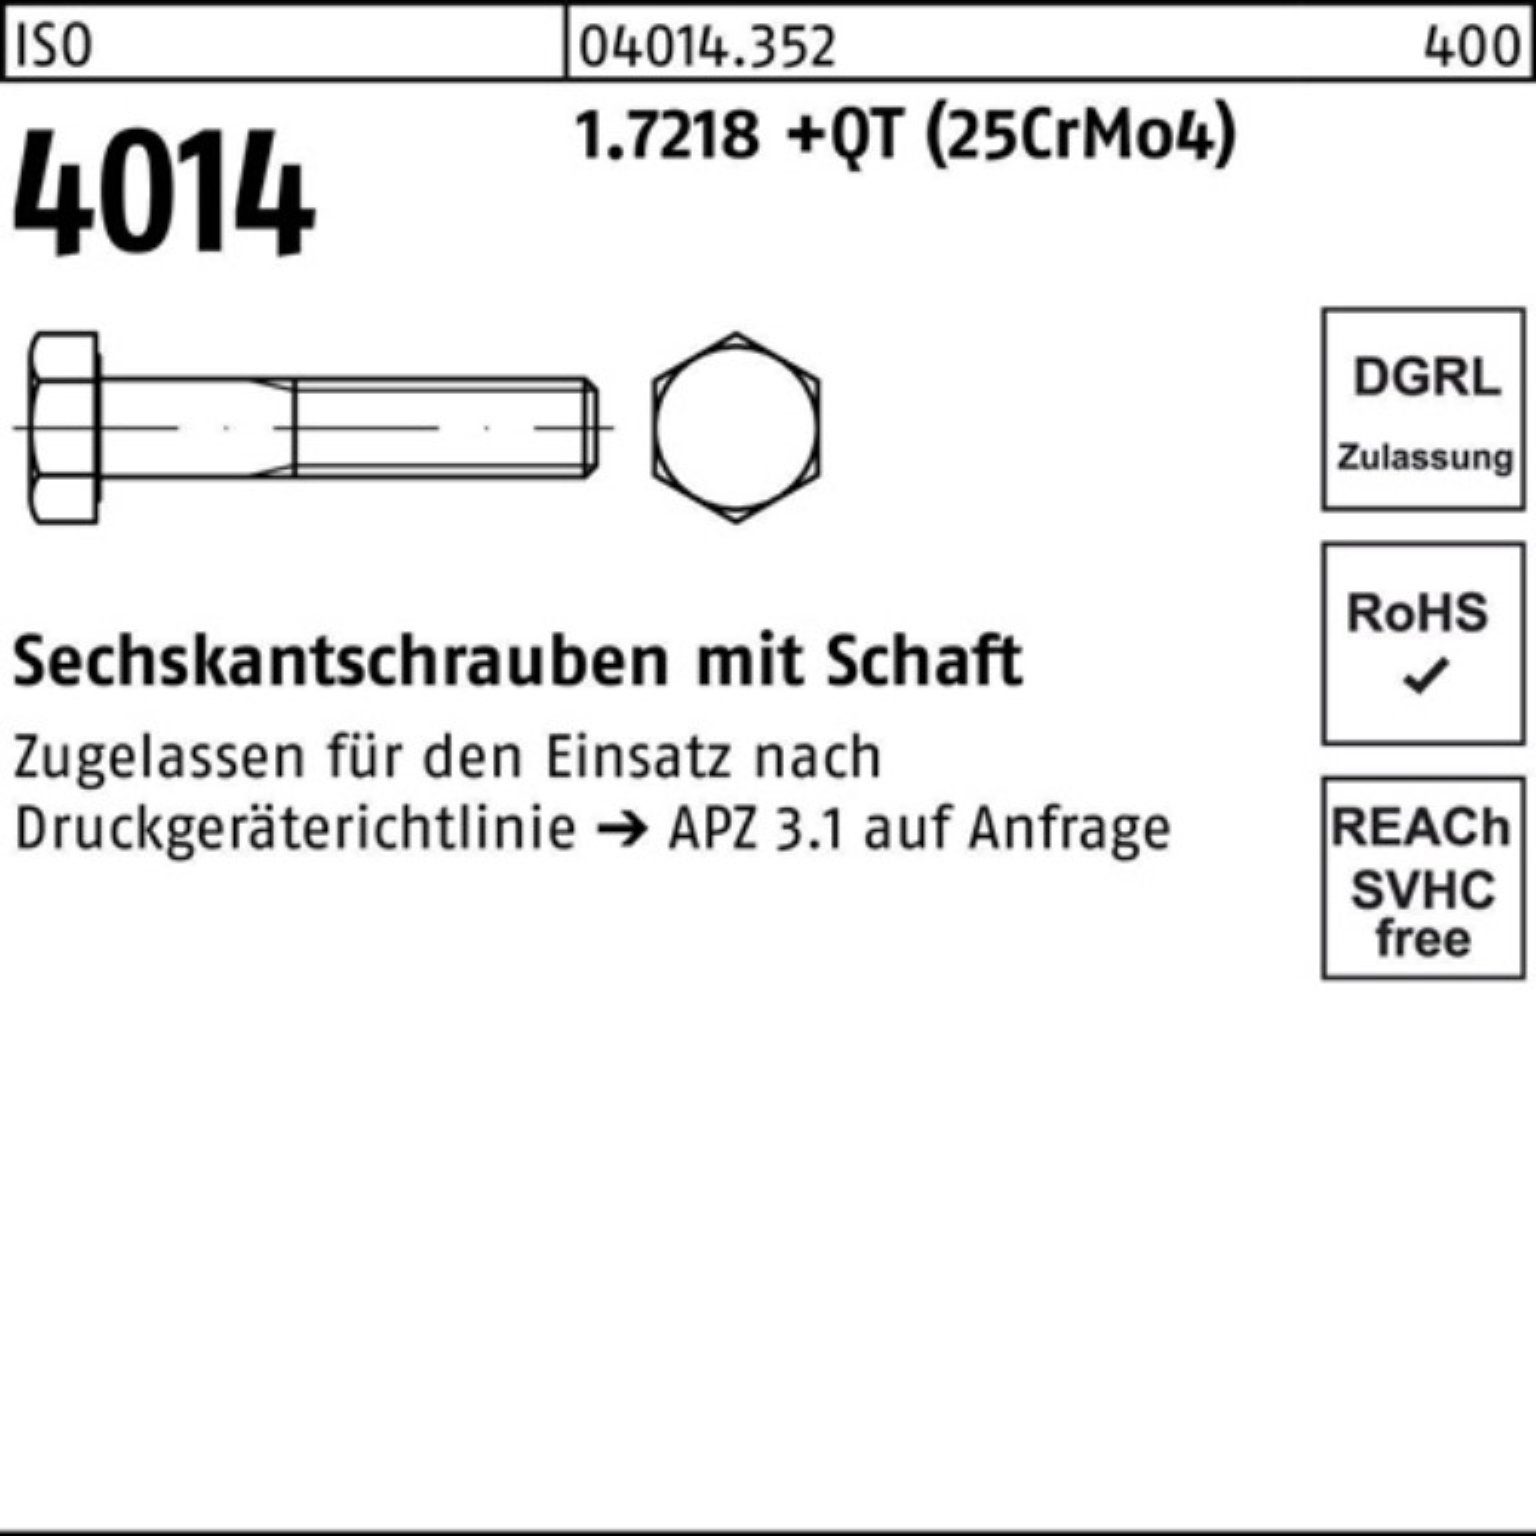 200 Sechskantschraube 100er (25Cr +QT M36x Bufab Sechskantschraube 4014 Pack 1.7218 ISO Schaft